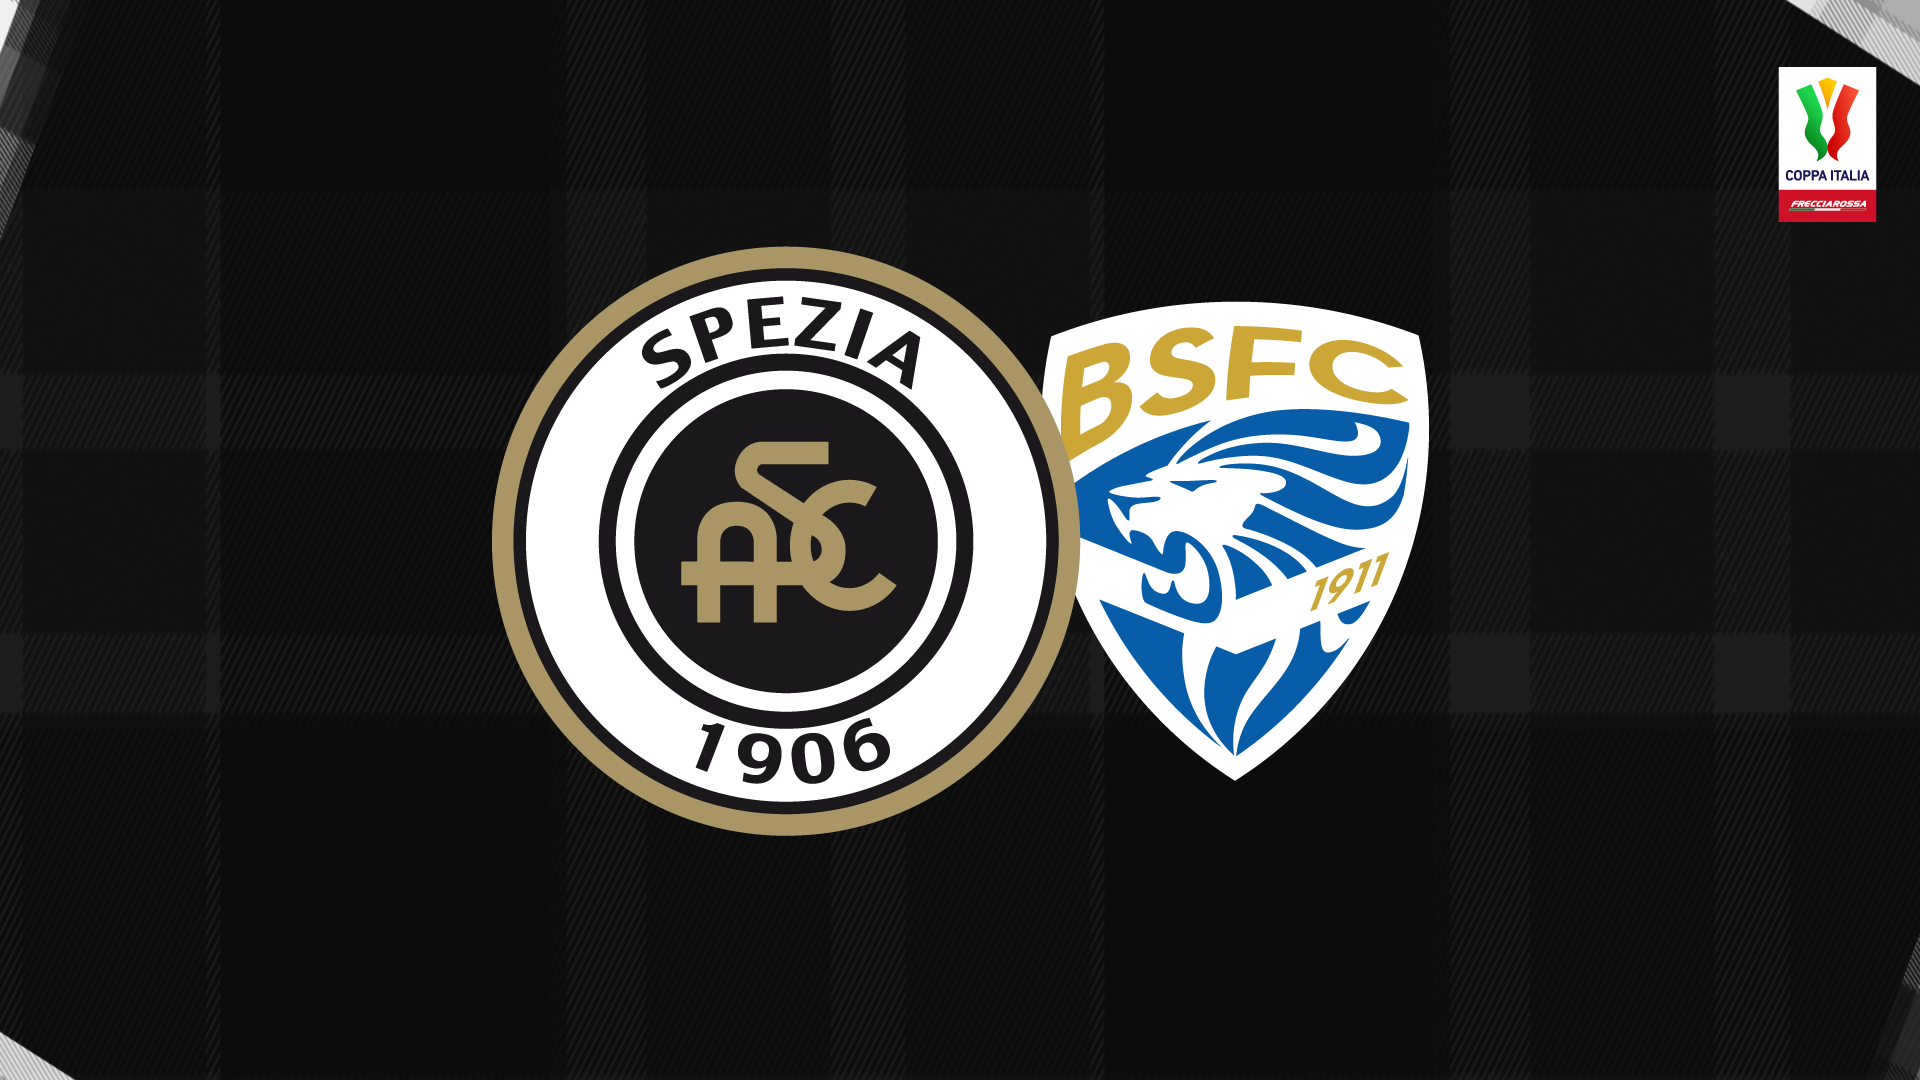 Coppa Italia Frecciarossa: Spezia-Brescia 3-1